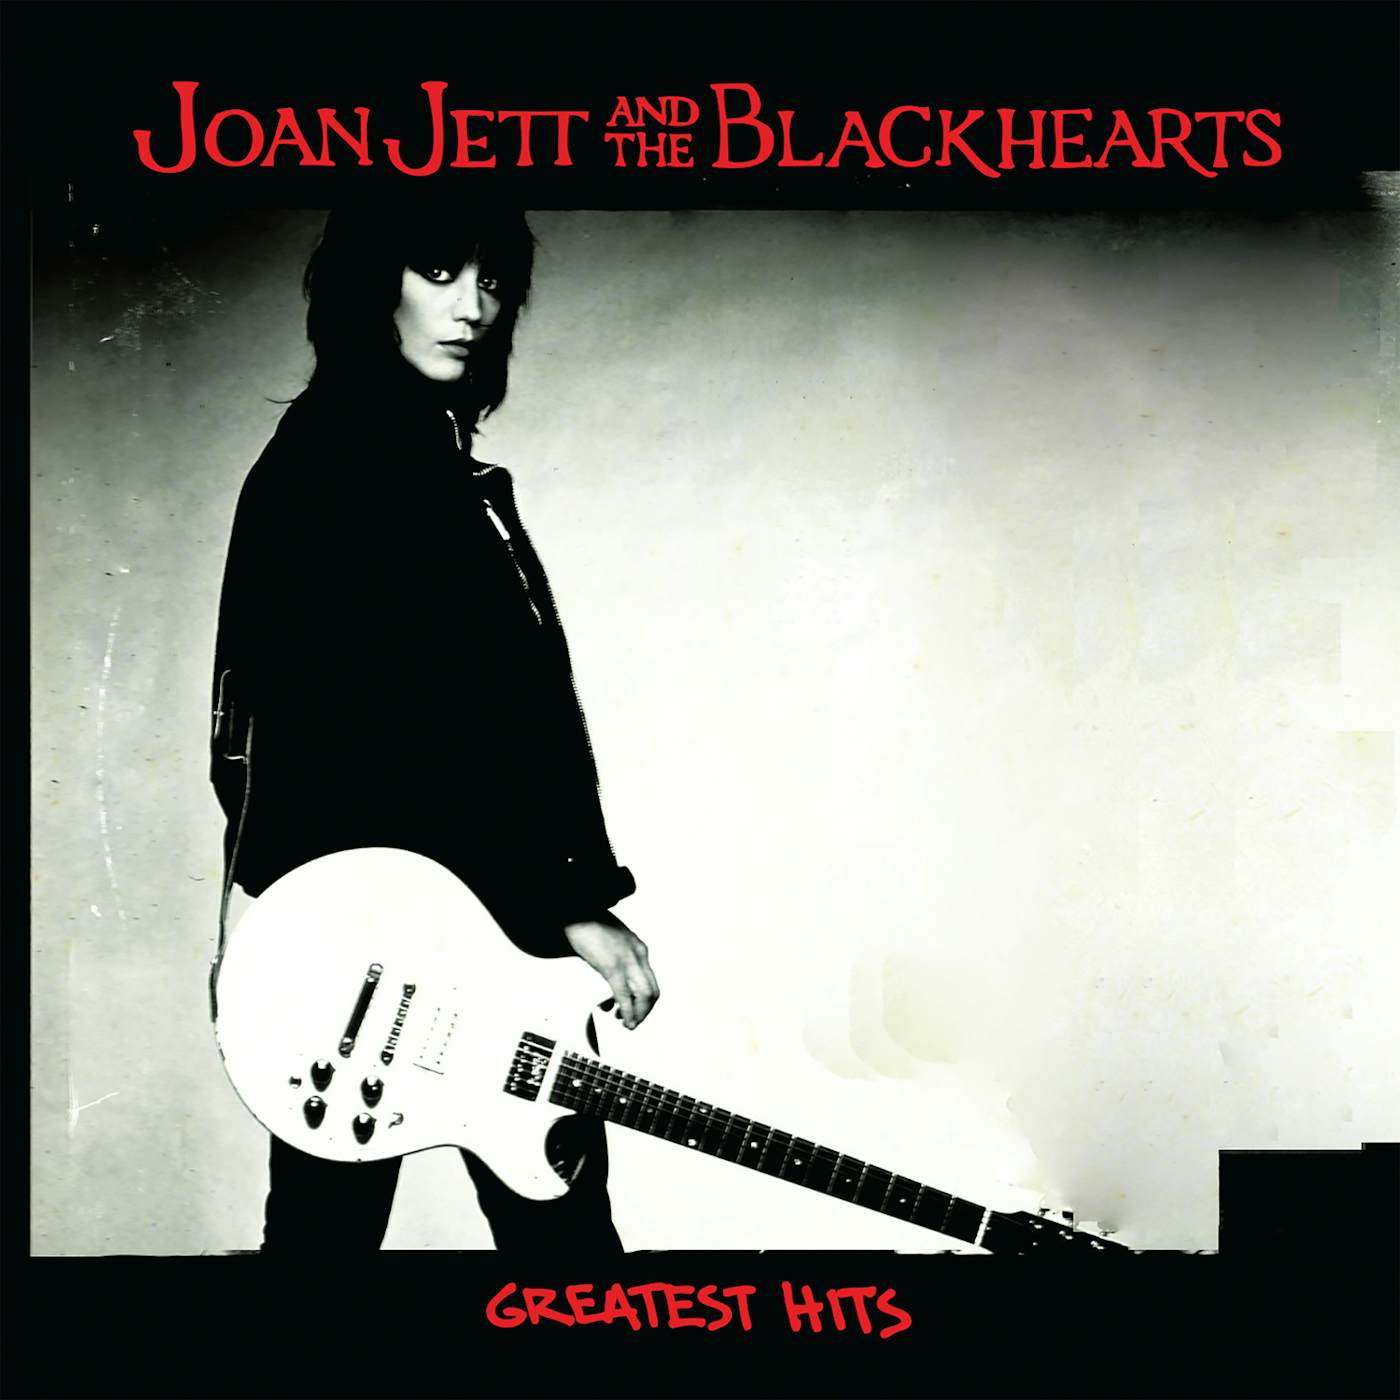 Joan Jett & the Blackhearts GREATEST HITS CD